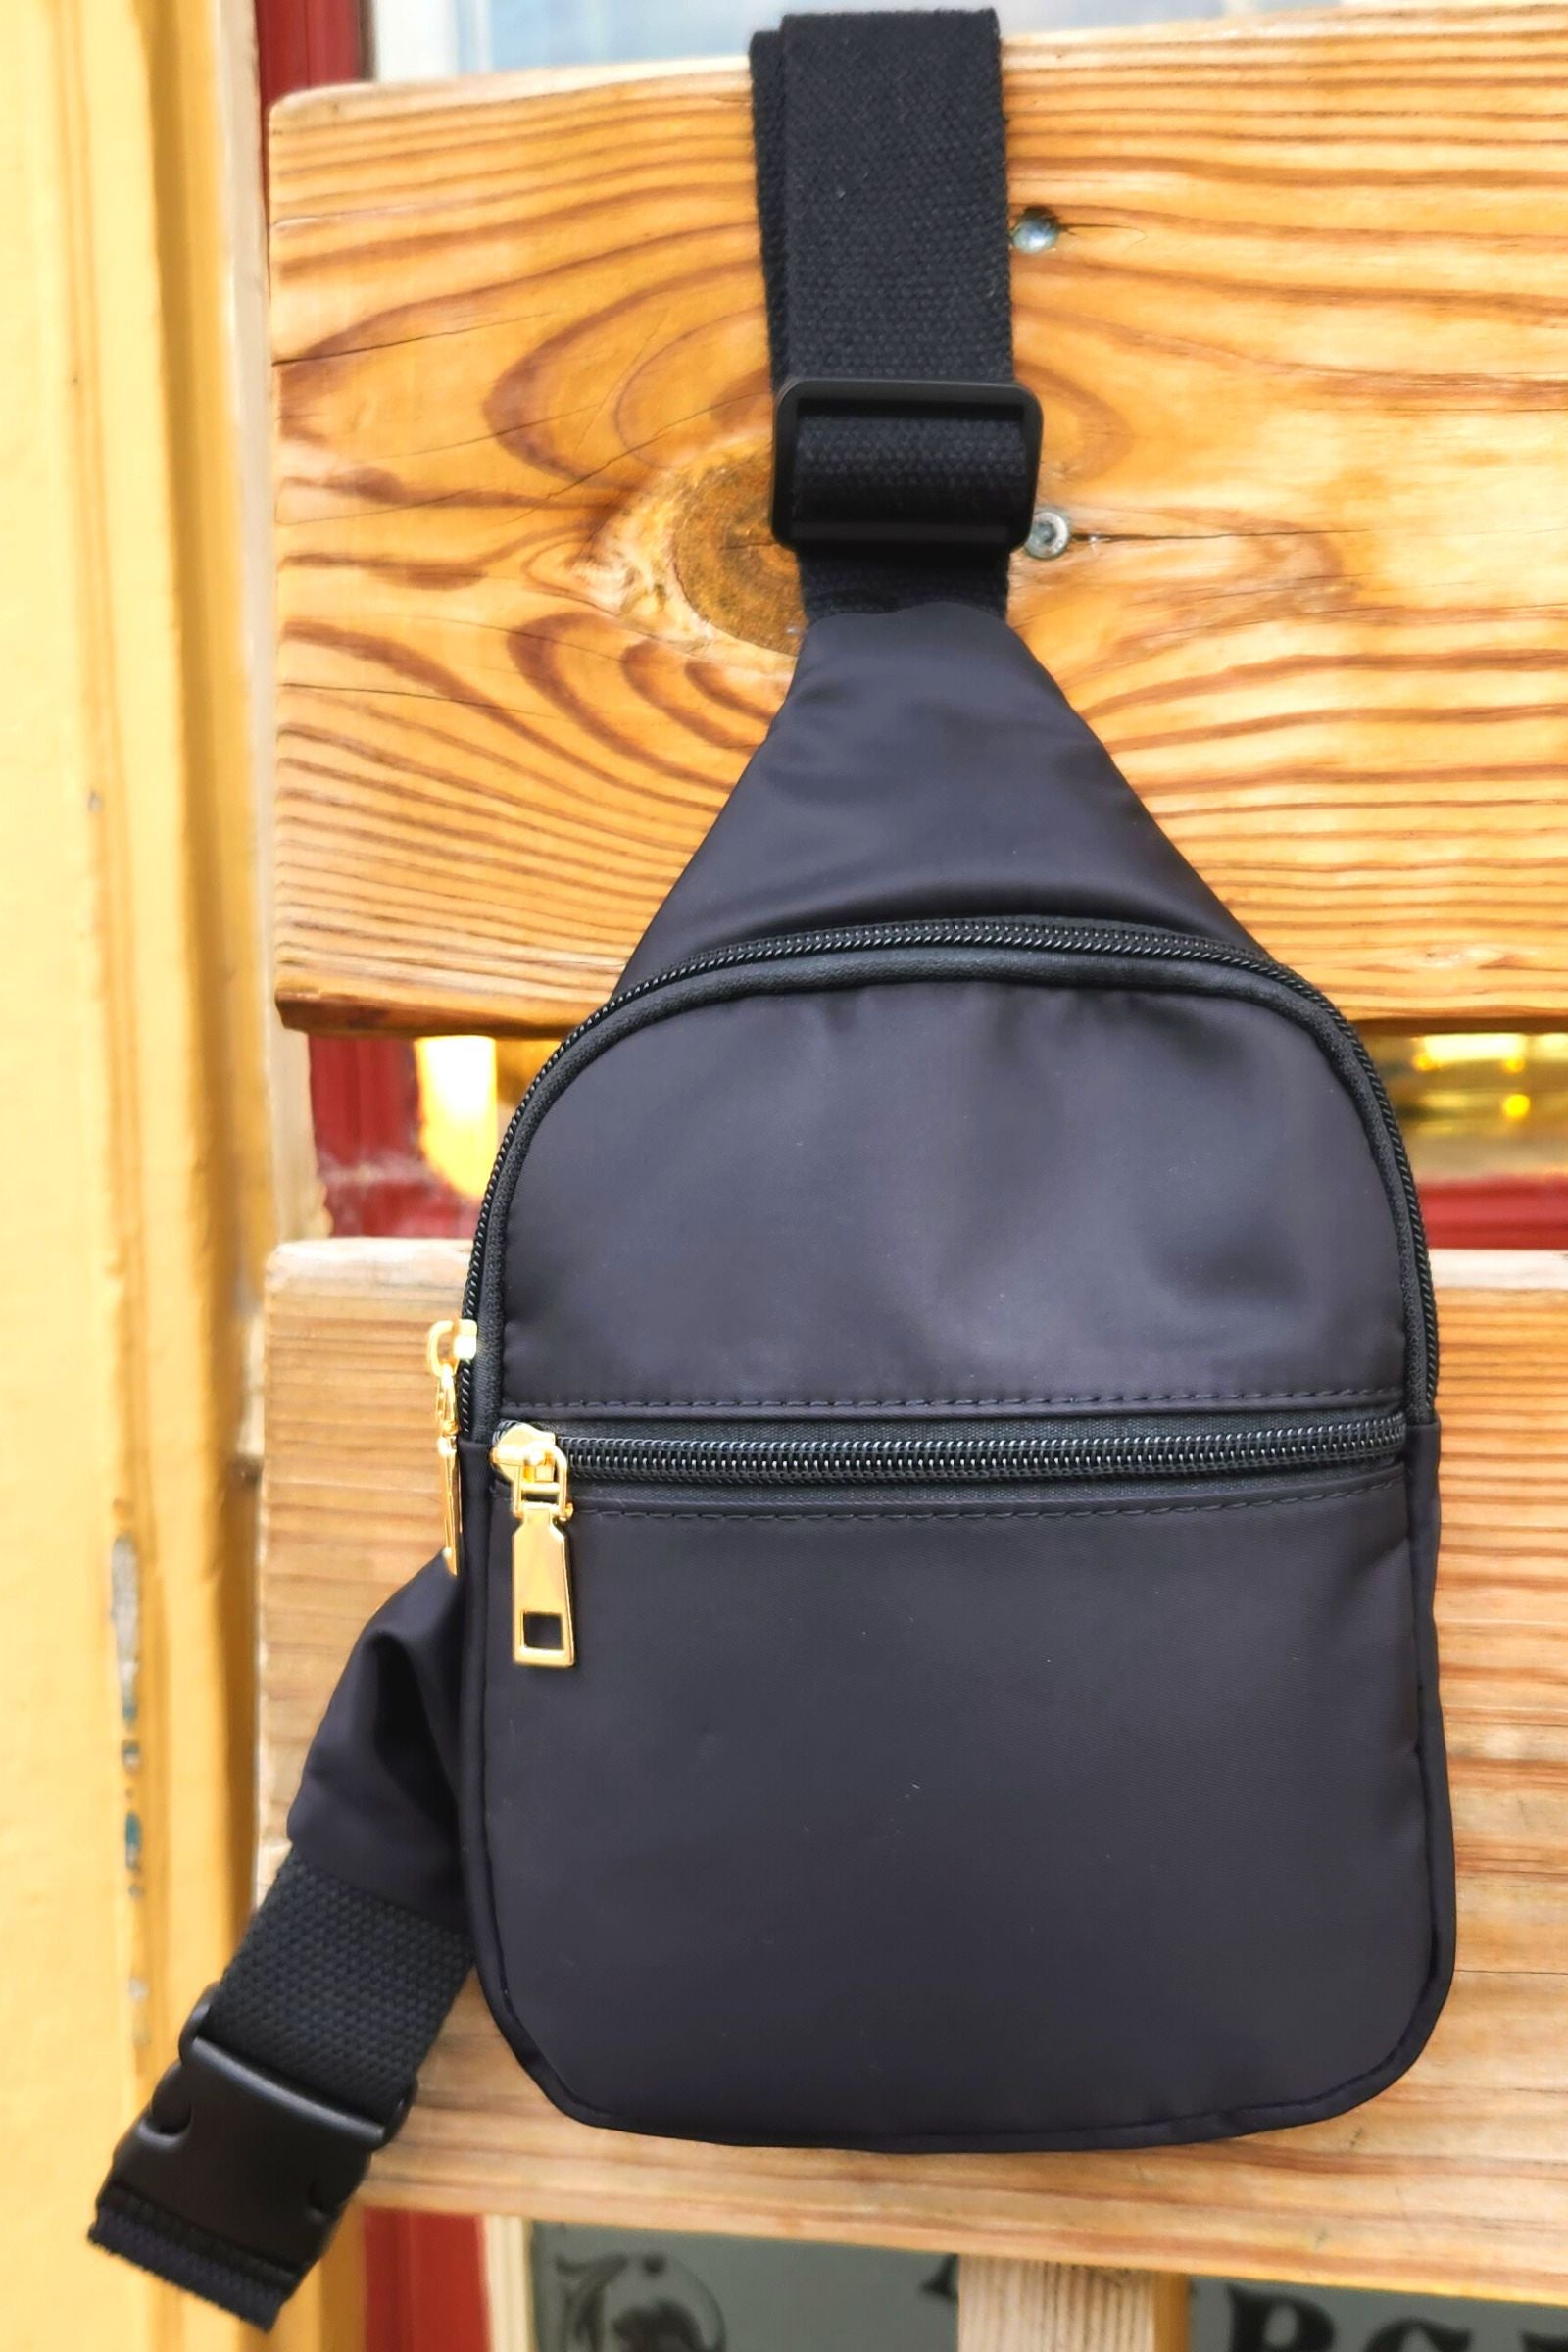 Black Mini Sling Bag